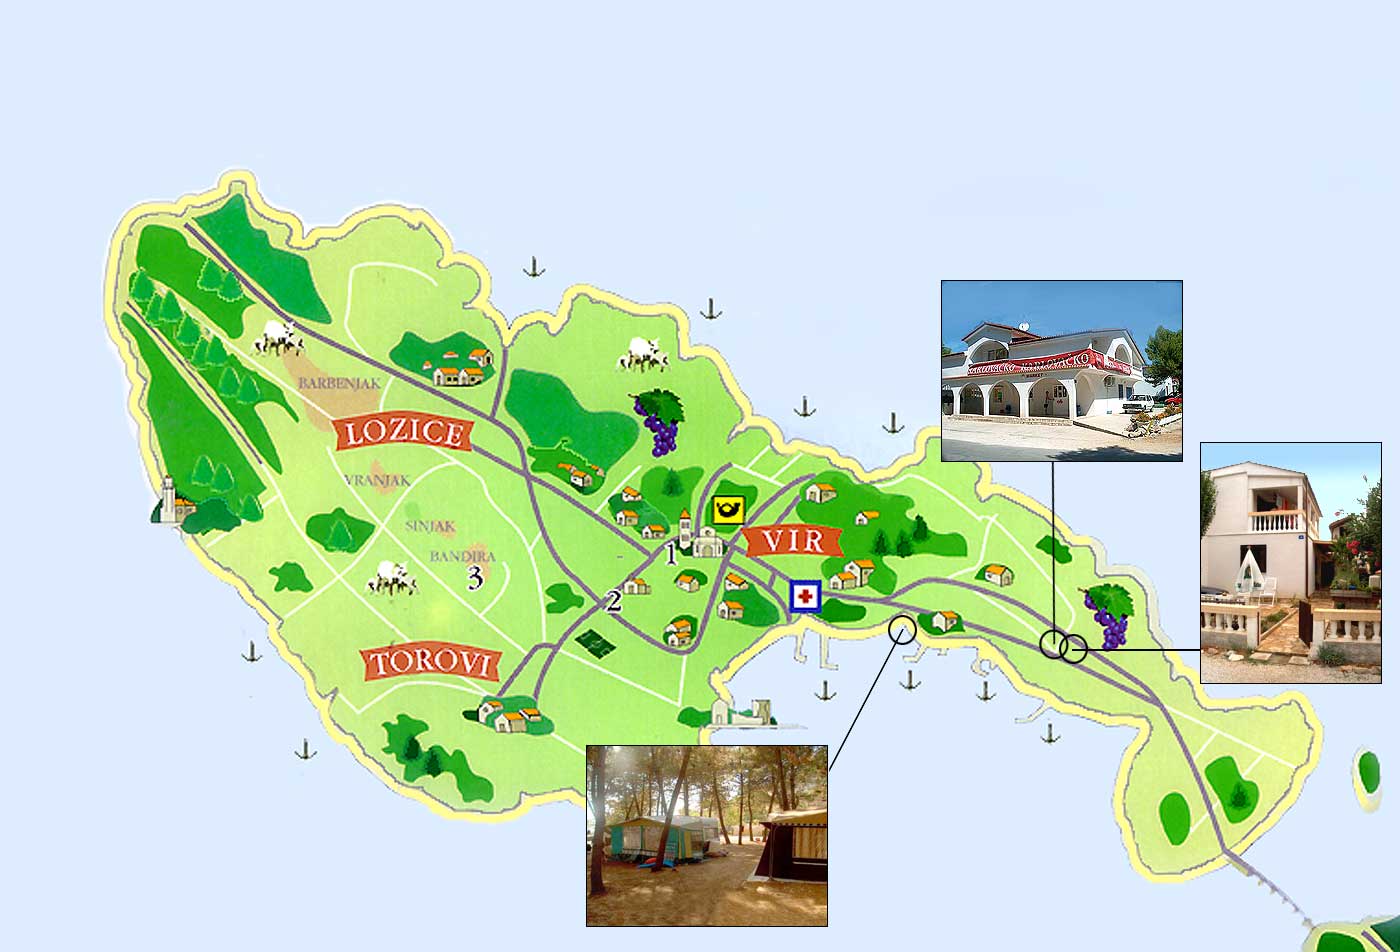 vir sziget térkép Napfényes Adria, Vir szigeti elösátras telepített lakókocsik  vir sziget térkép